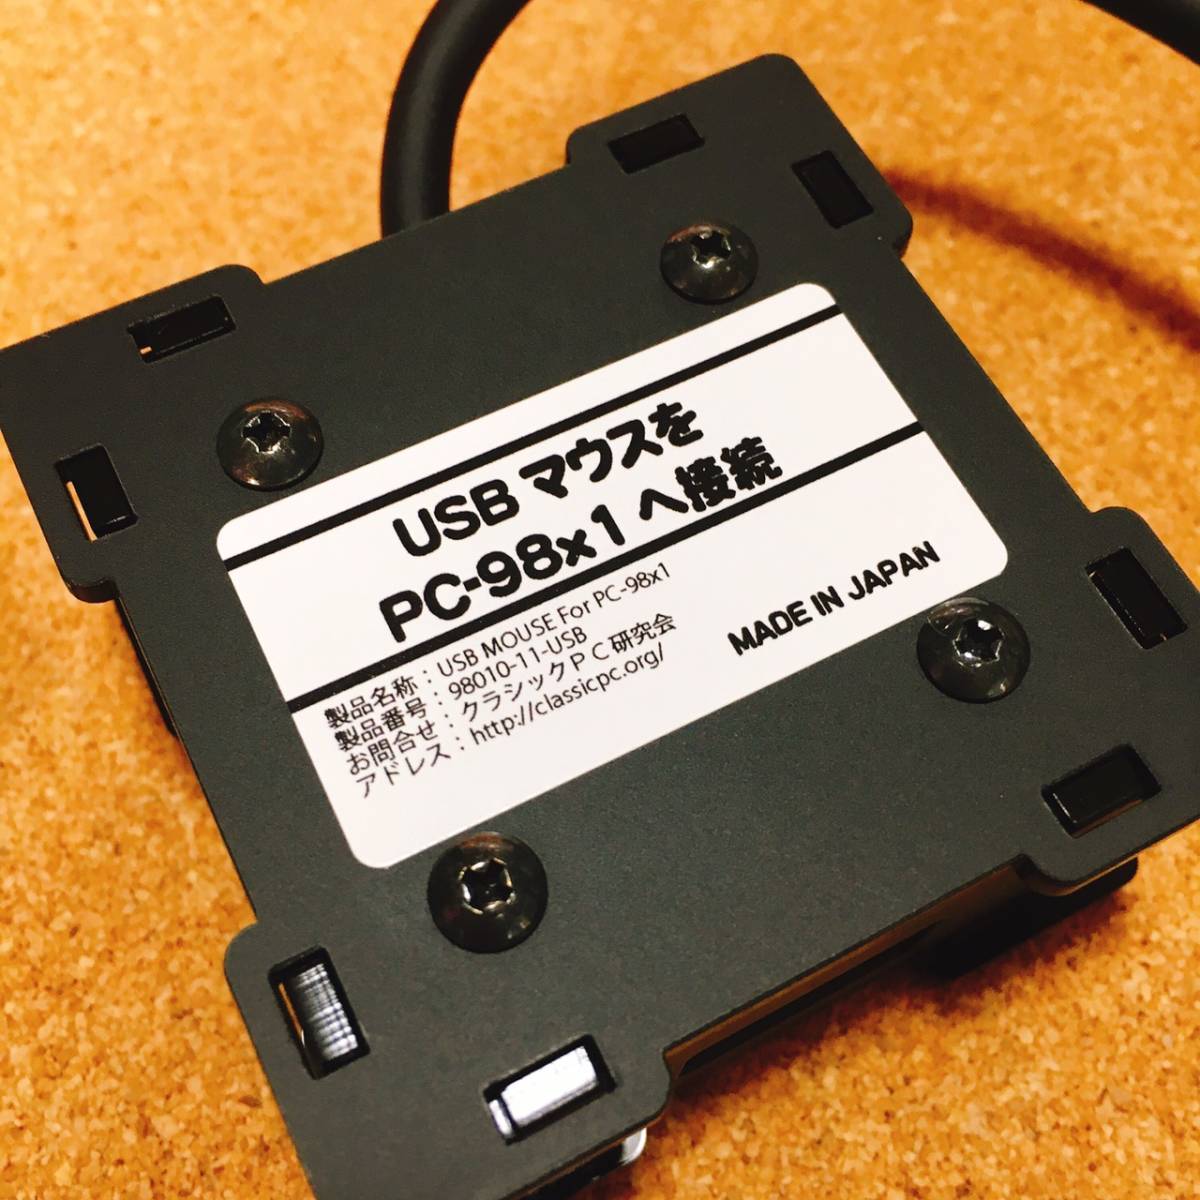 新品未使用◆NEC PC-9801 PC-9821シリーズへUSBマウスを接続するための変換機◆